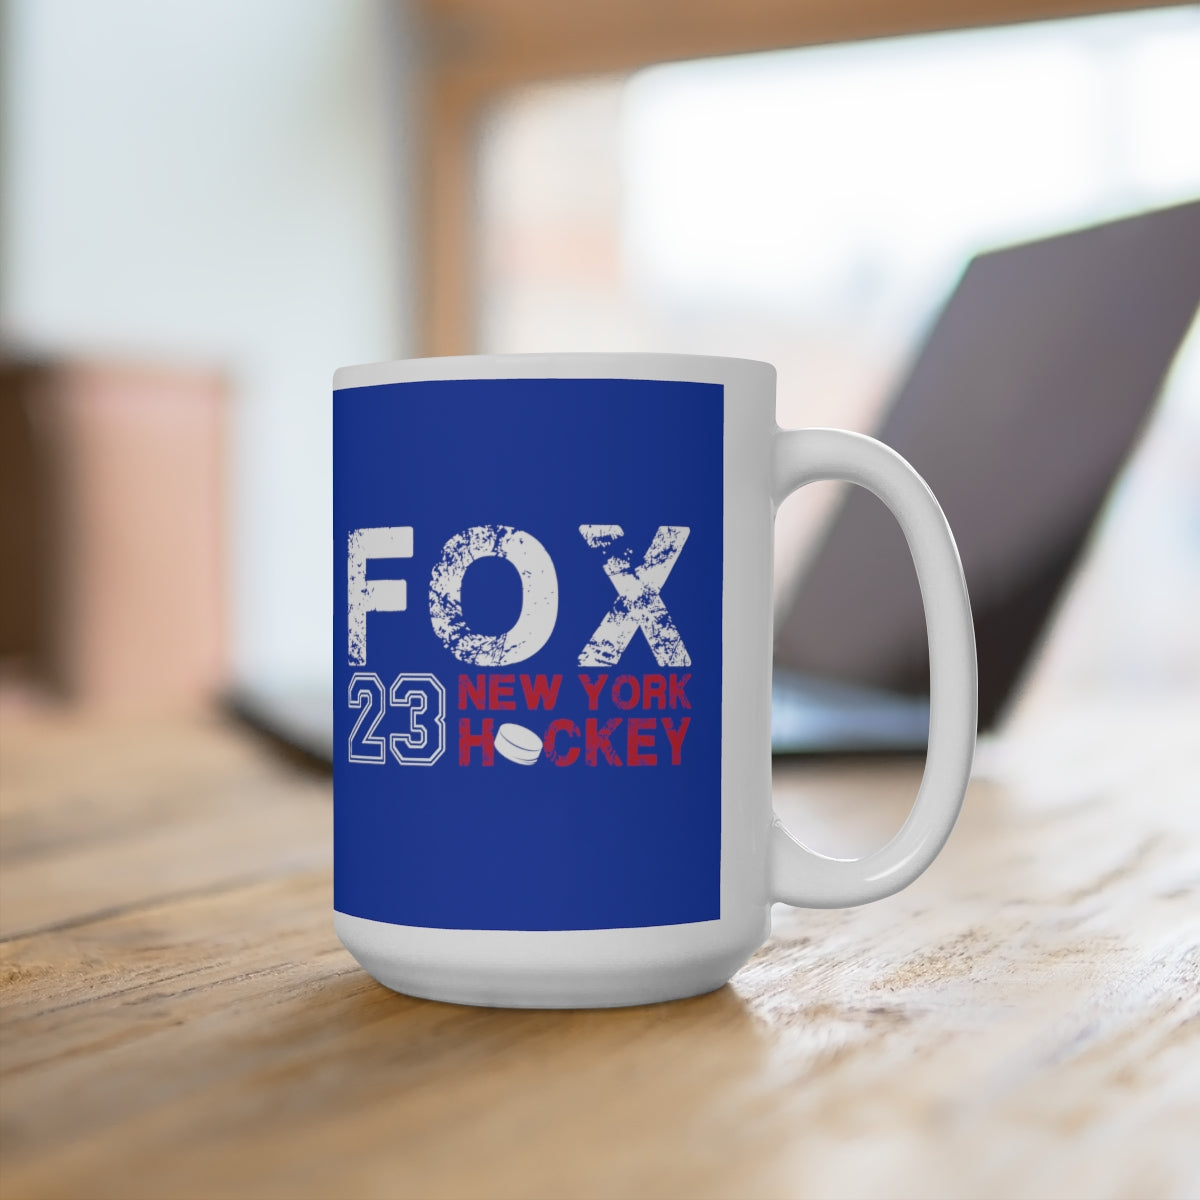 Fox 23 New York Hockey Ceramic Coffee Mug In Blue, 15oz